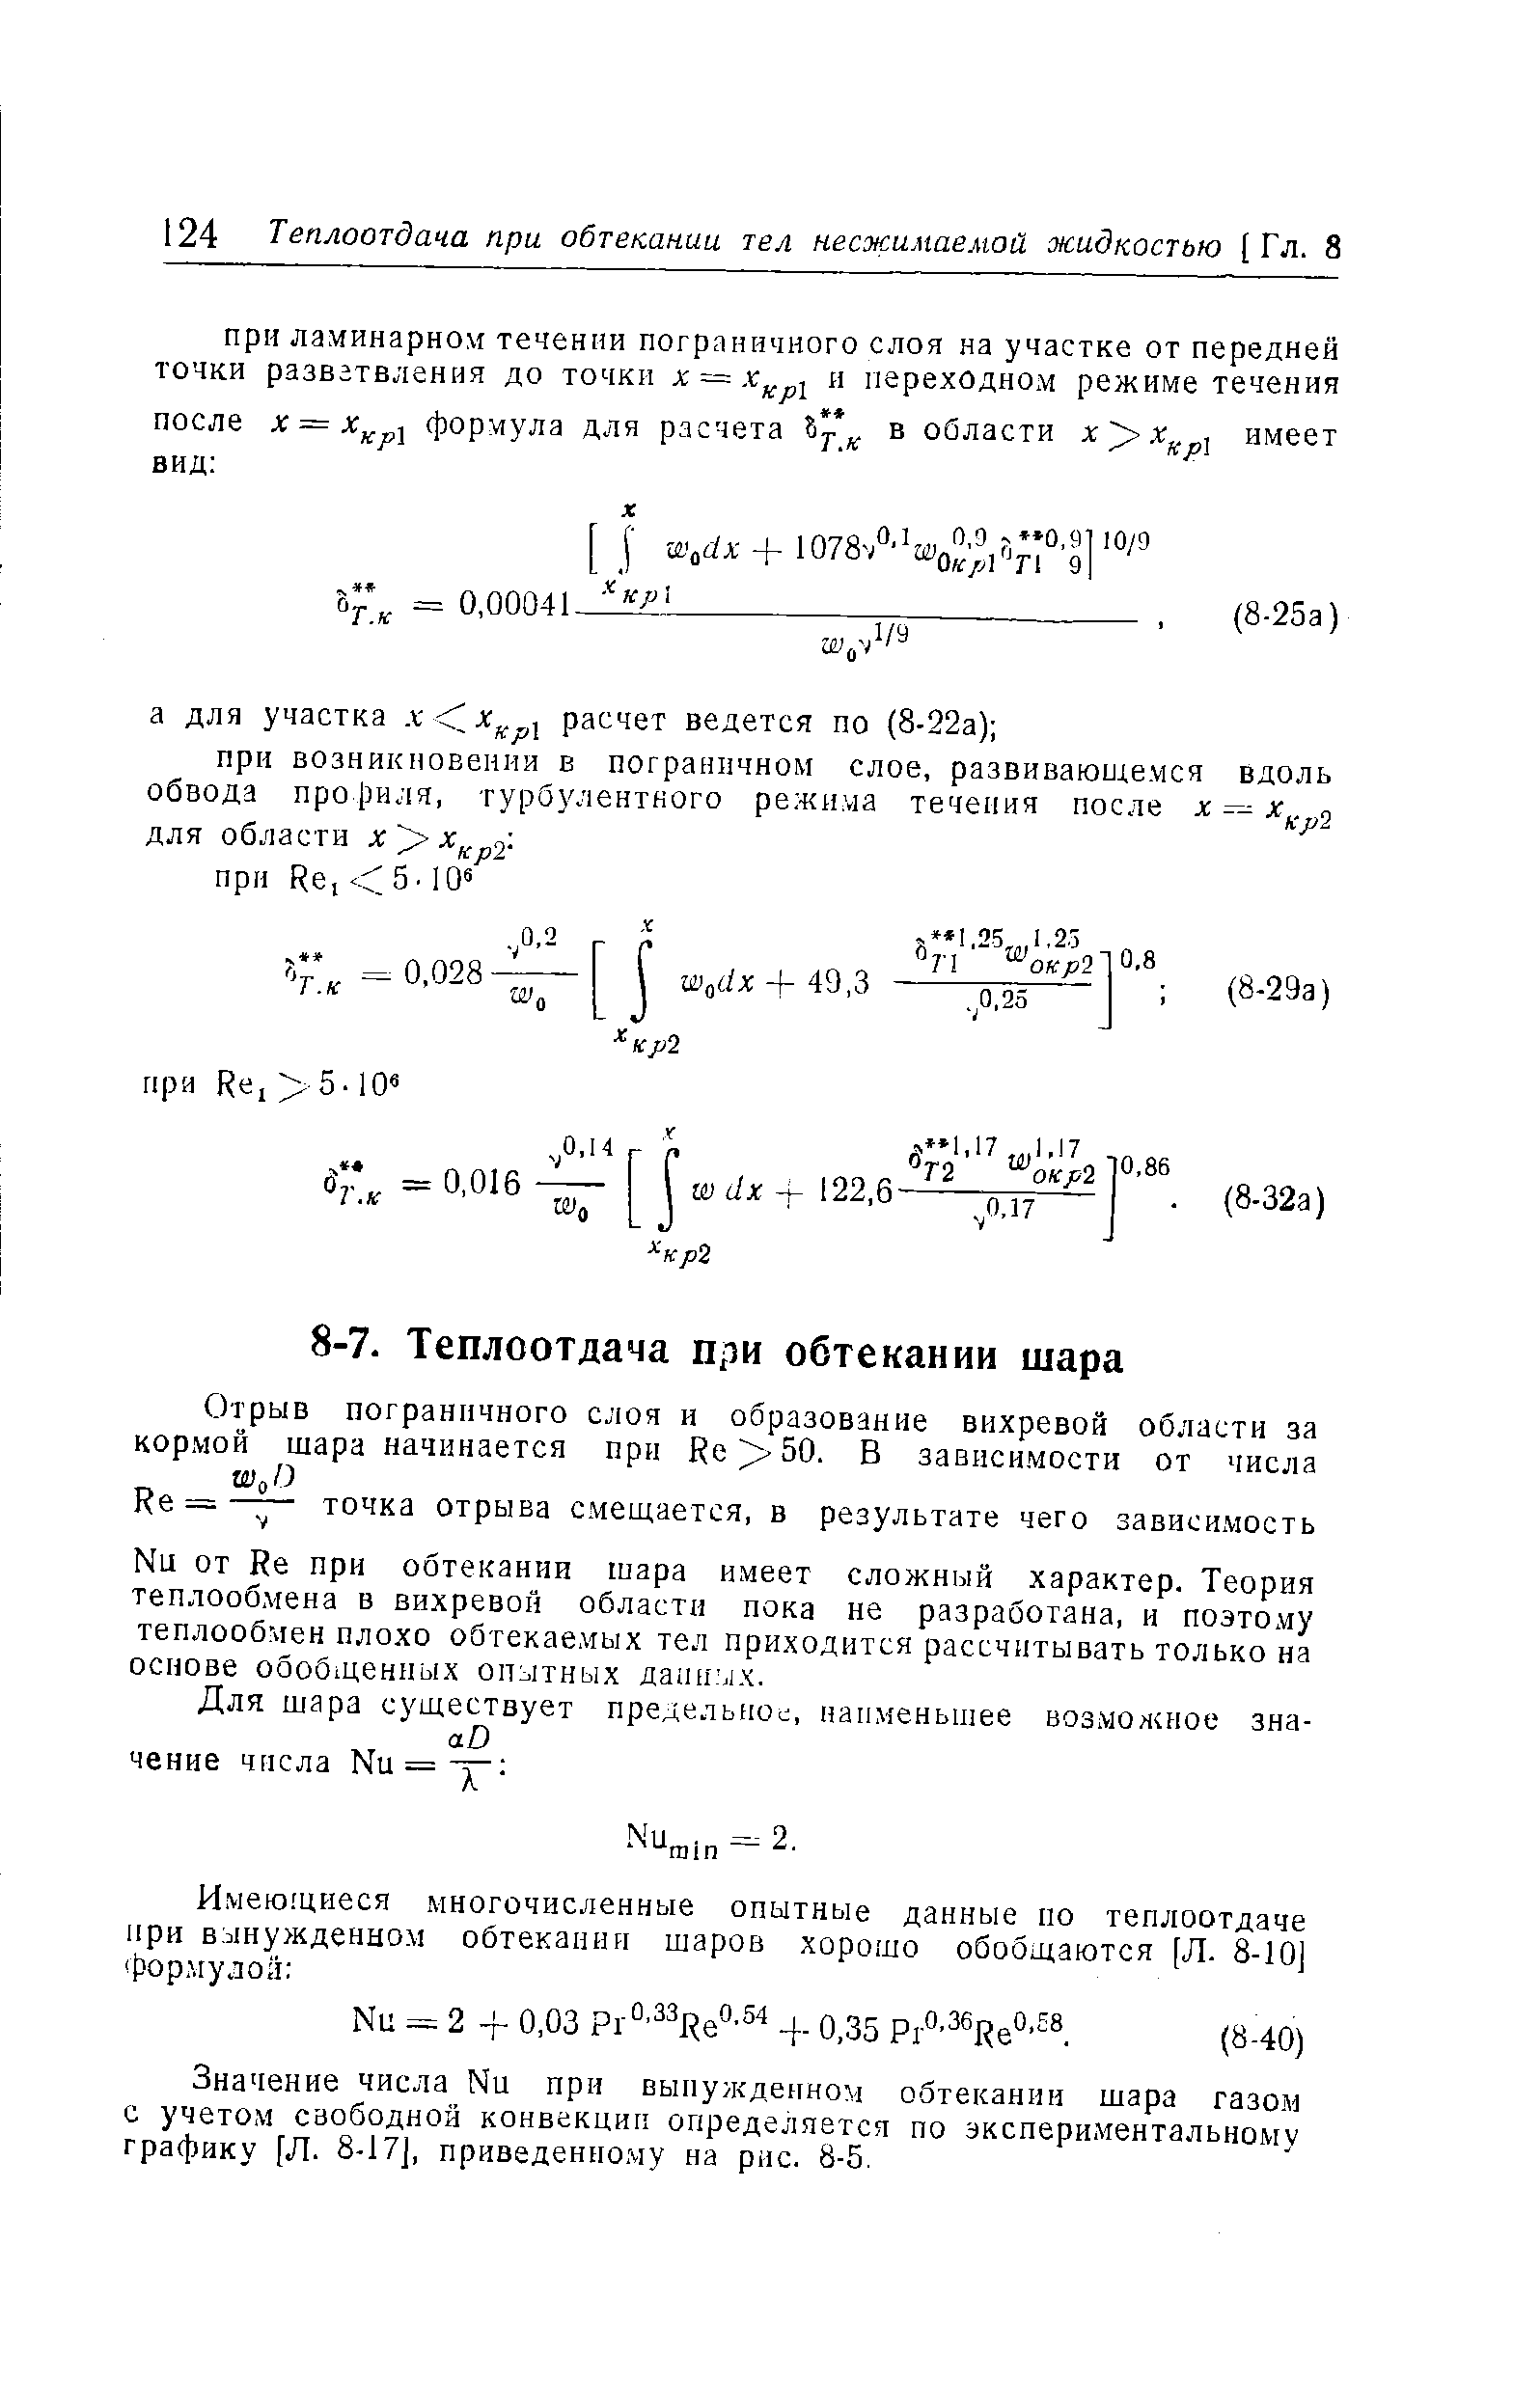 Значение числа Nu при вынужденном обтекании шара газом с учетом свободной конвекции определяется по экспериментальному графику [Л. 8-17J, приведенному на рис. 8-5.
